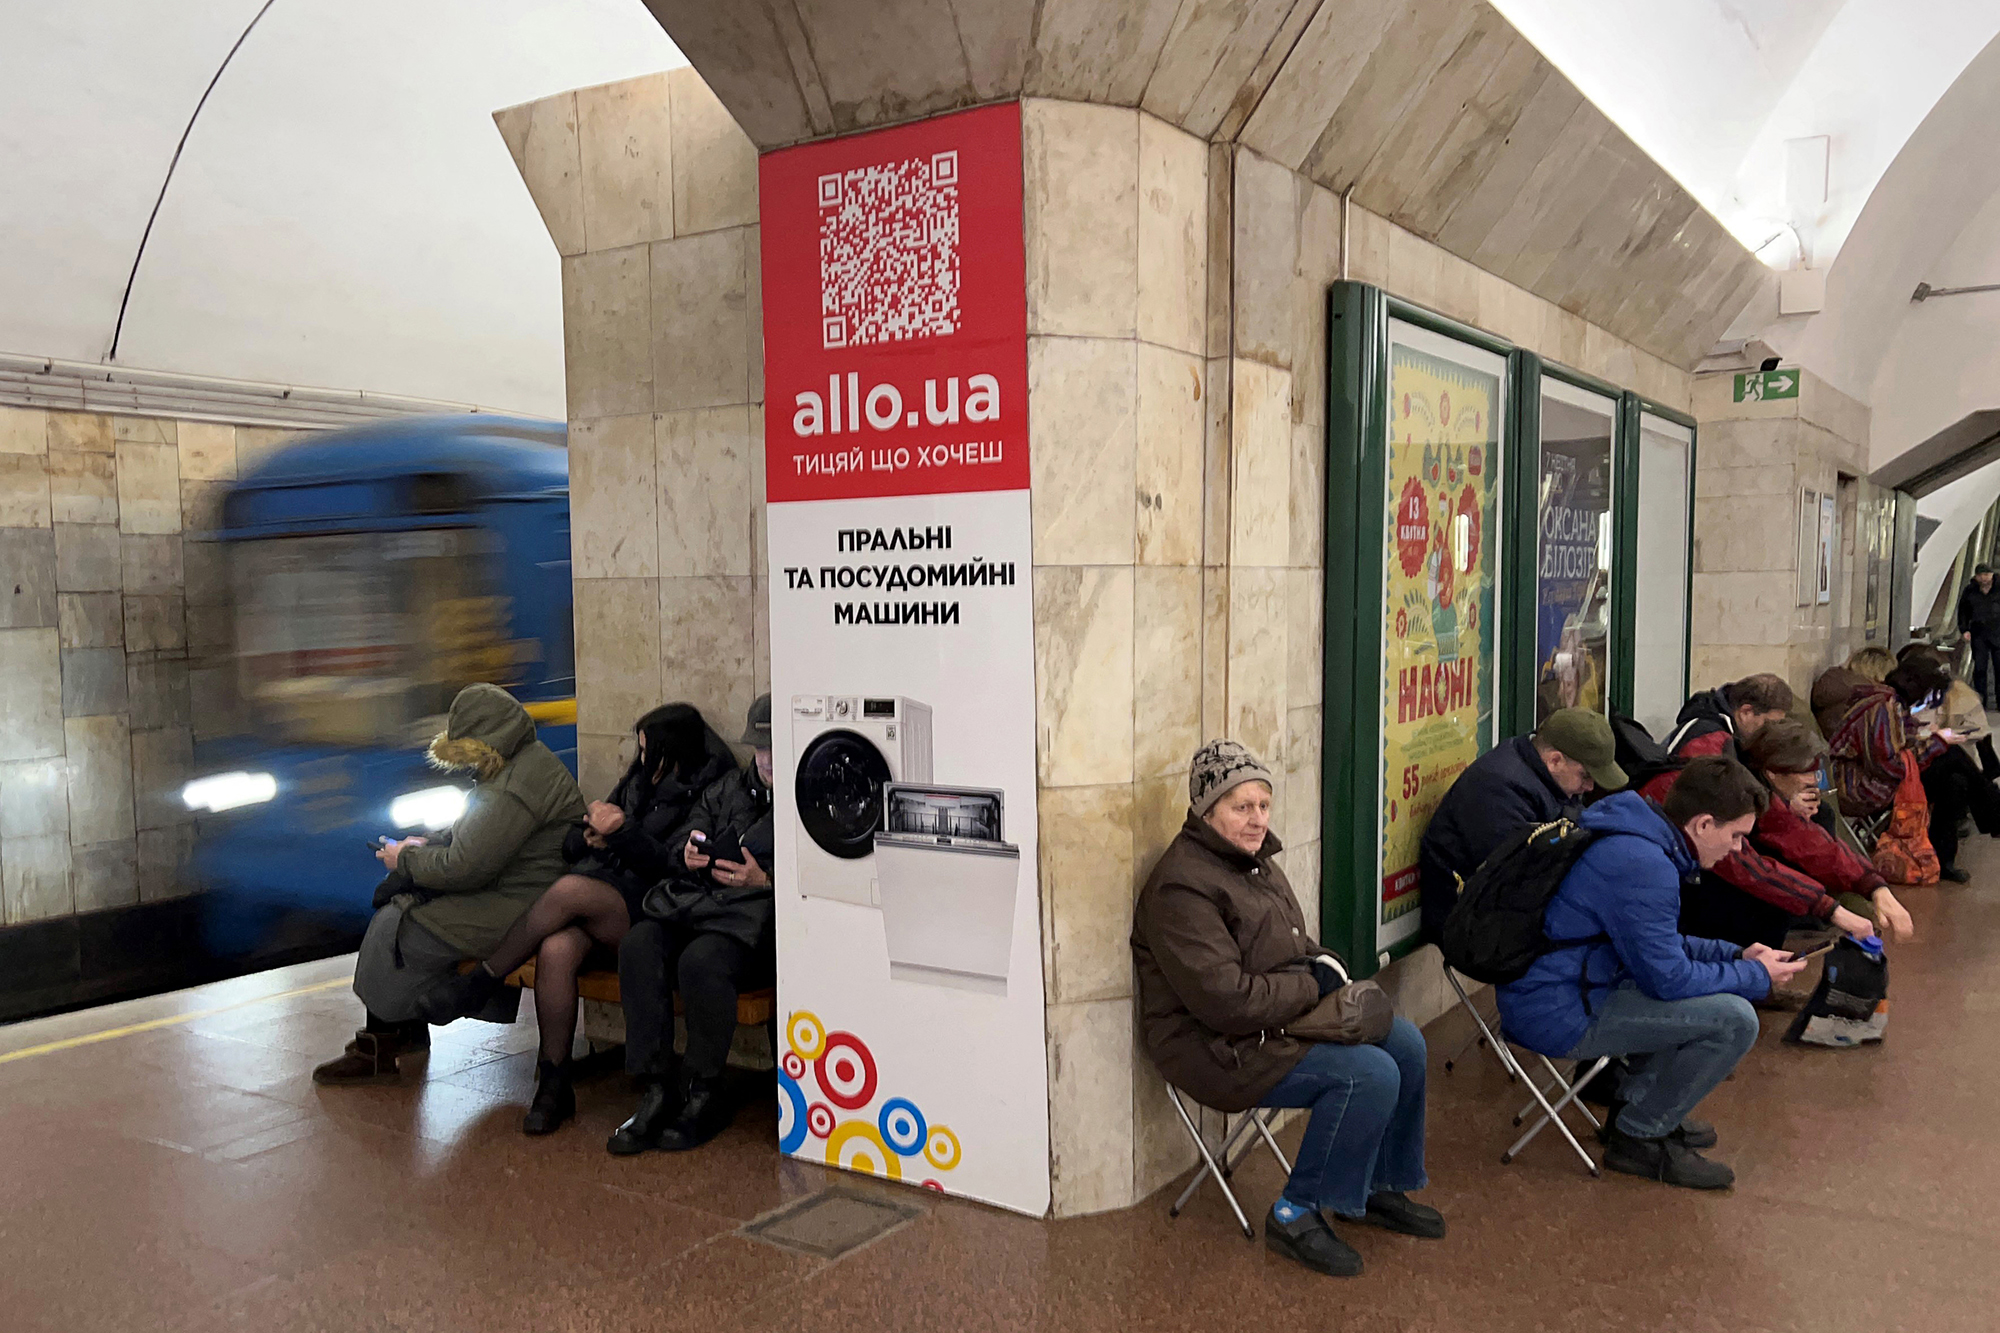 Menschen suchen Schutz in einer unterirdischen Metrostation während eines Luftangriffsalarms in Kiew